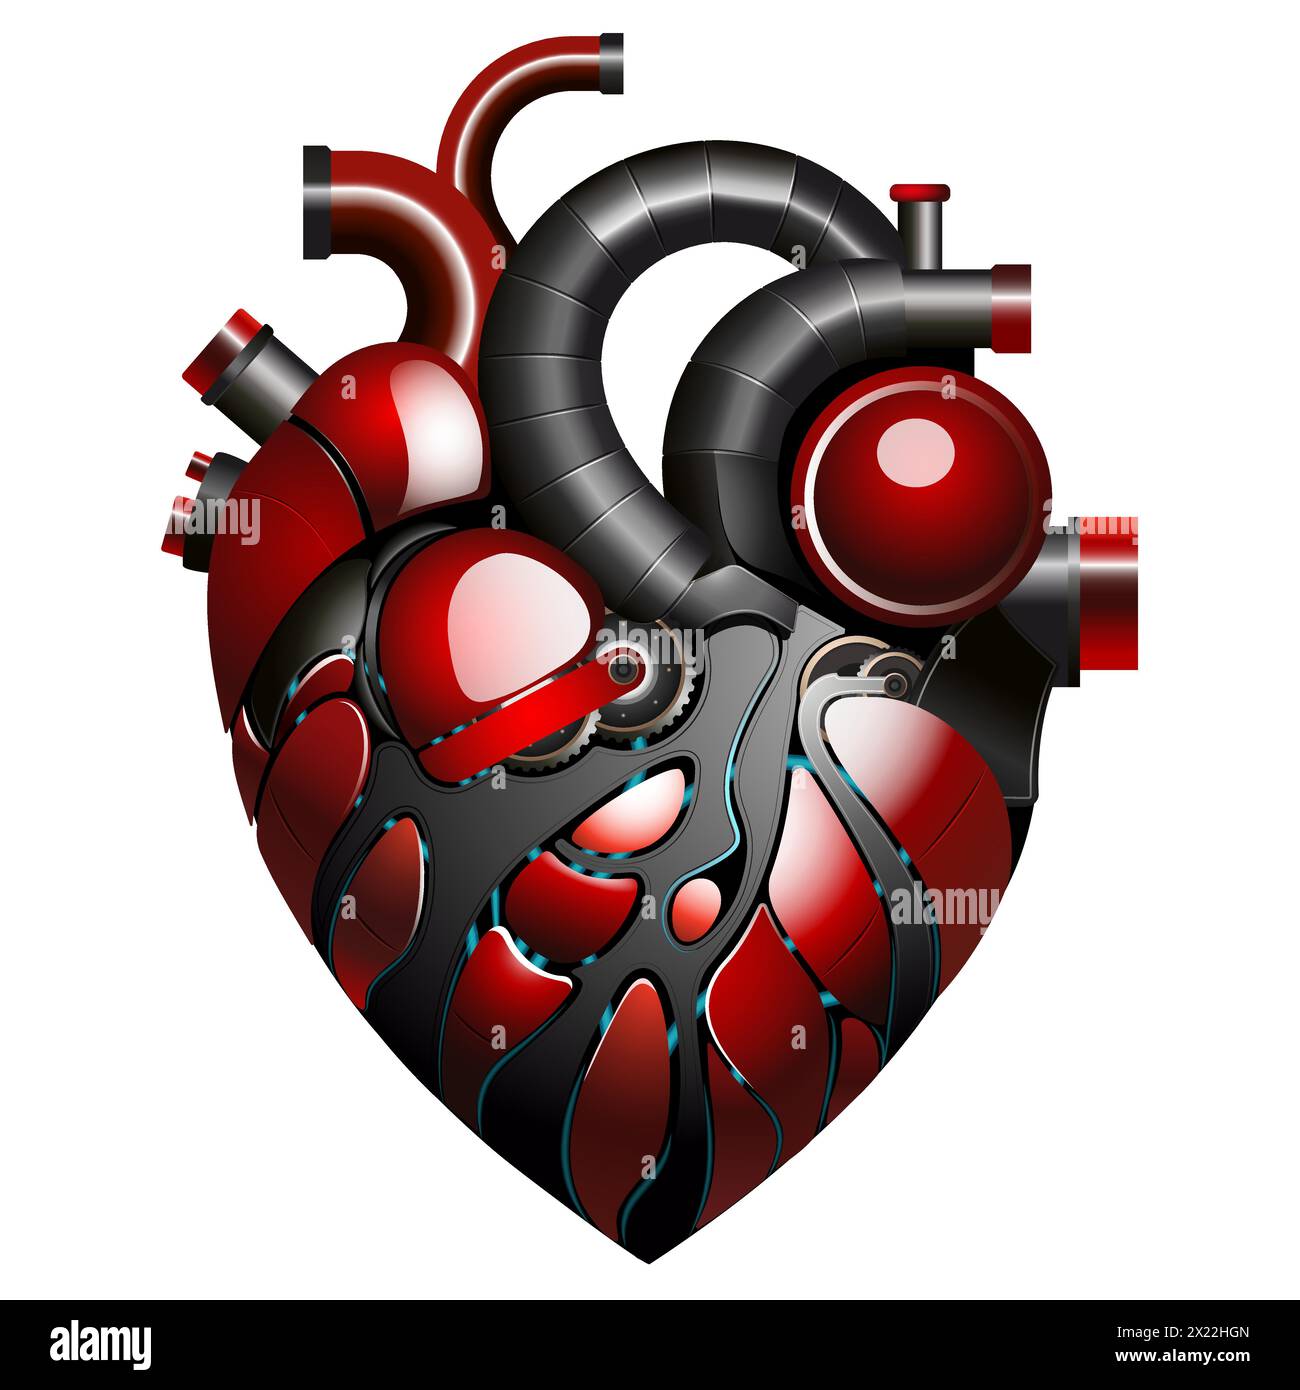 Eine detaillierte Vektor-Illustration des roten und schwarzen mechanischen Herzens mit Zahnrädern, Rohren, auf weißem Hintergrund Stock Vektor